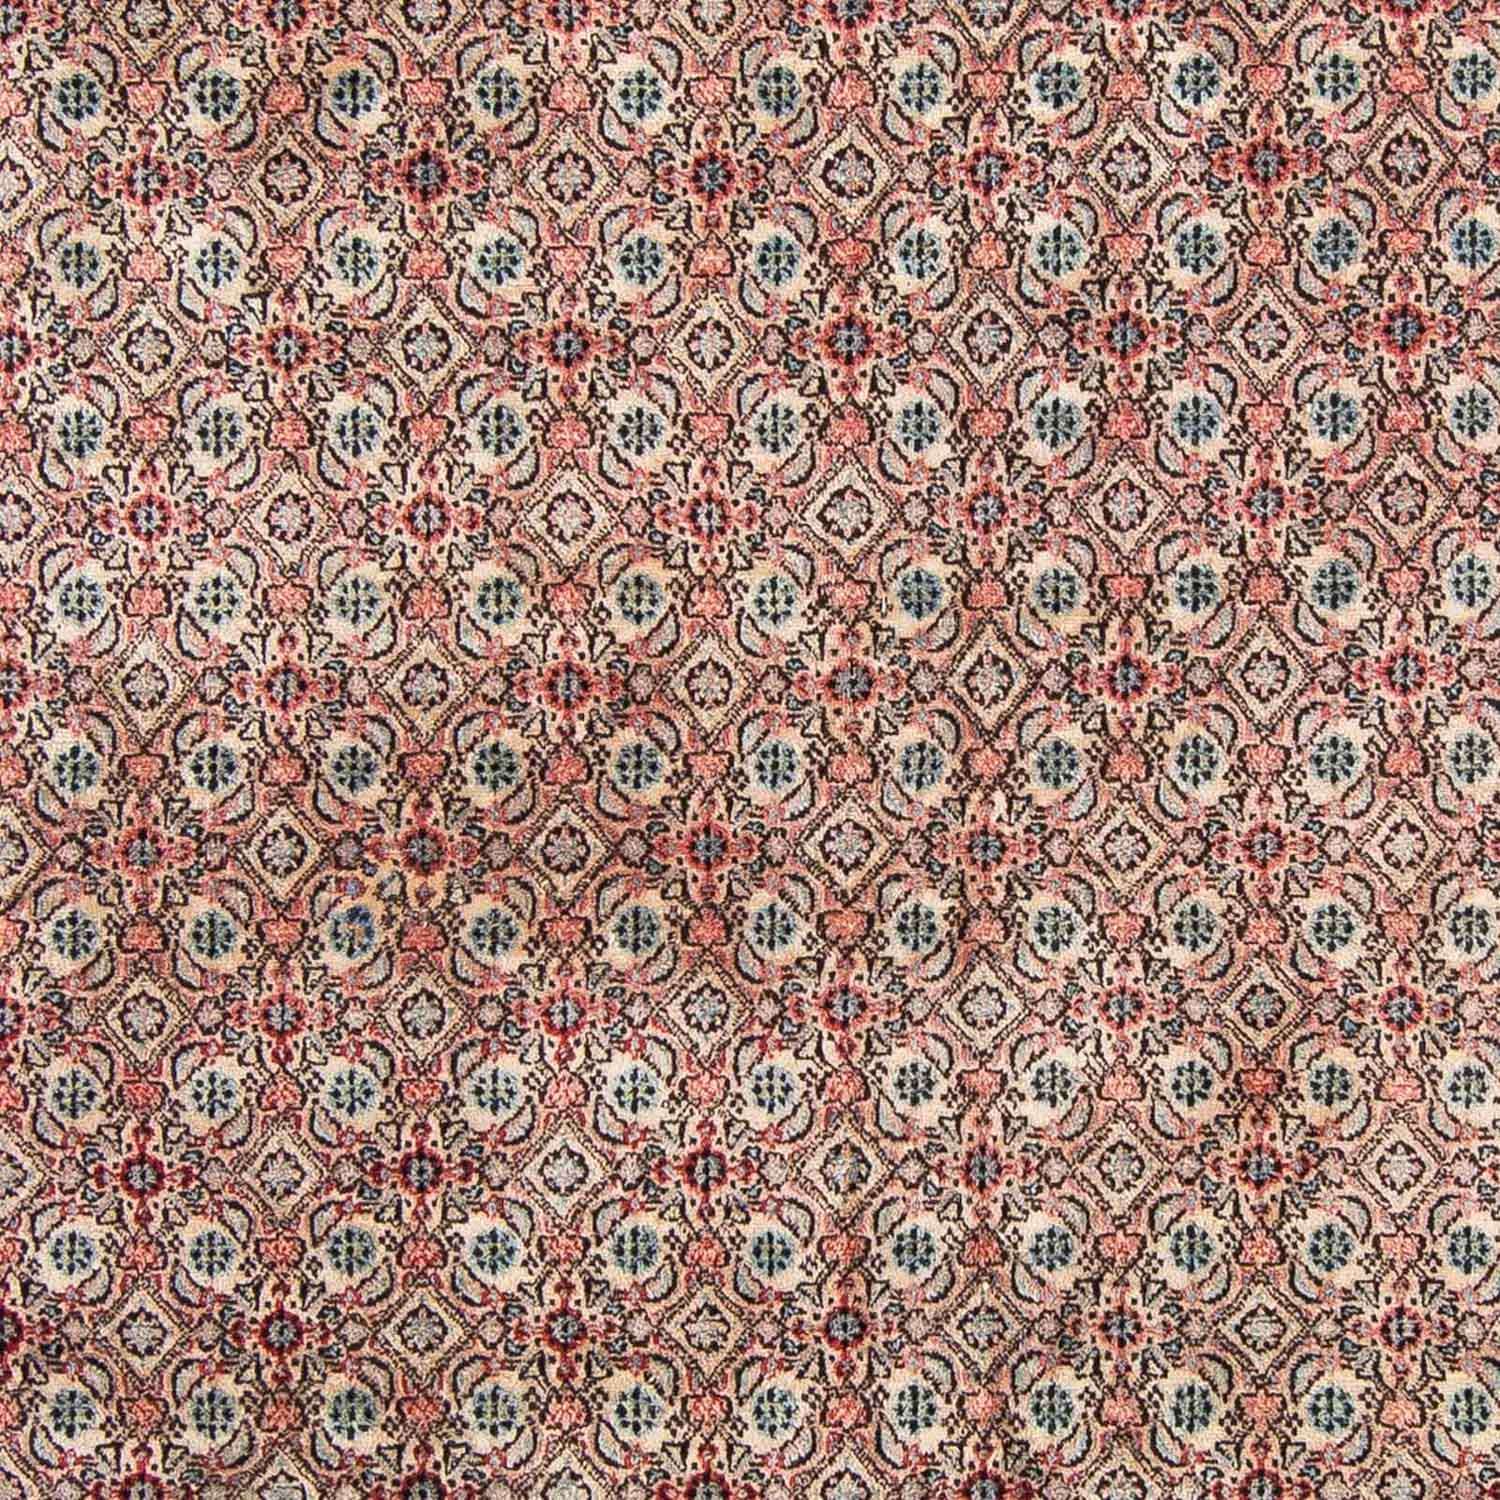 Tapete Persa - Clássico - 296 x 207 cm - vermelho claro